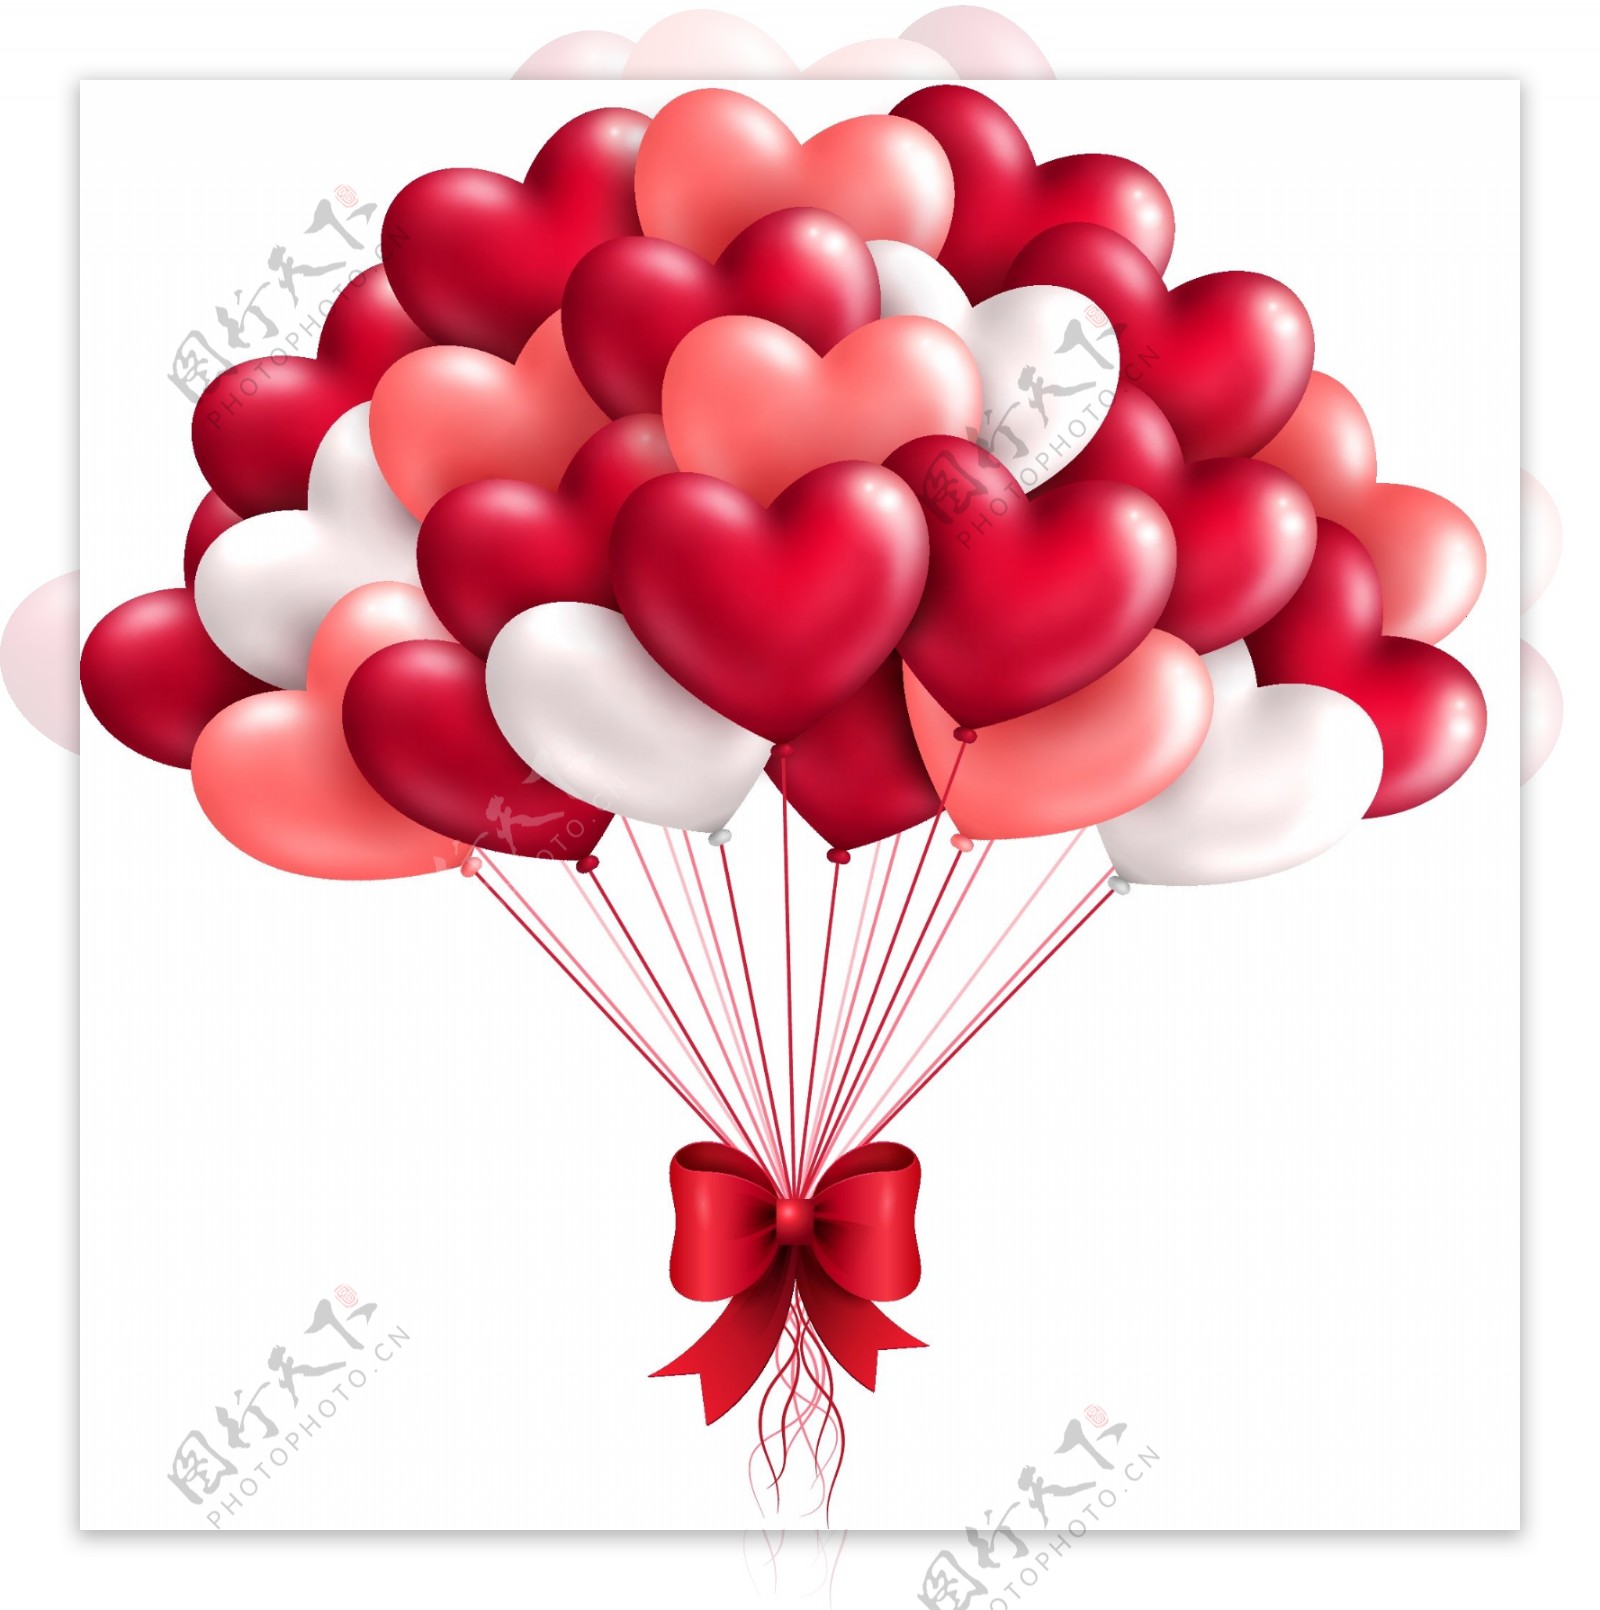 浪漫红色气球